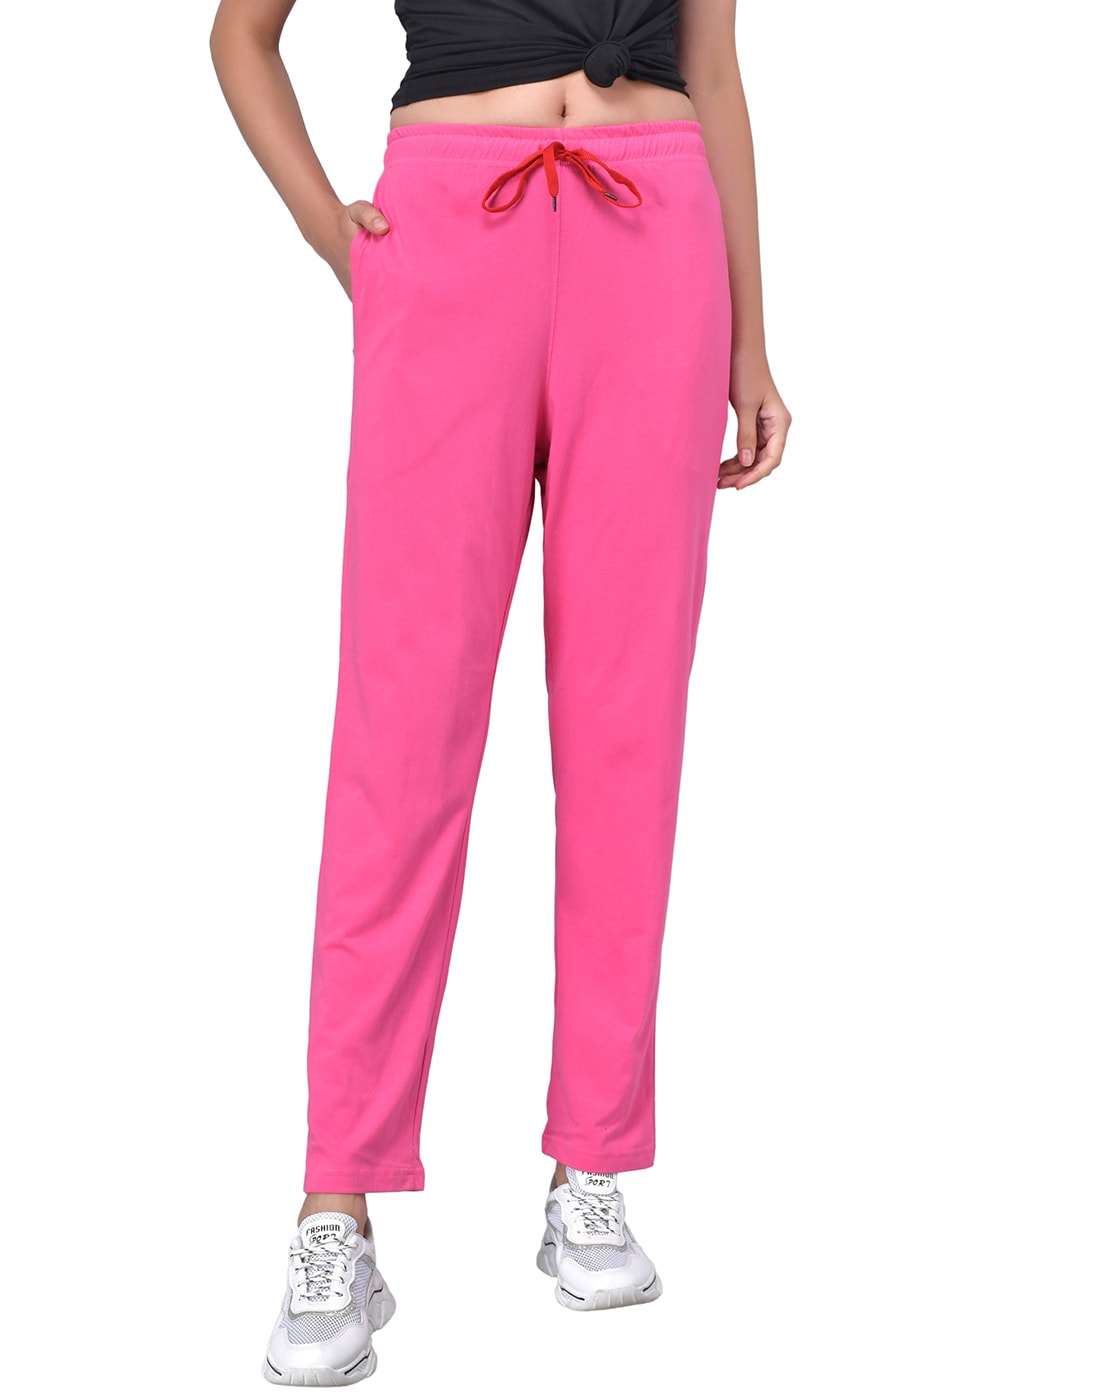 SLAZENGER Solid Women Pink Track Pants  Buy SLAZENGER Solid Women Pink  Track Pants Online at Best Prices in India  Flipkartcom